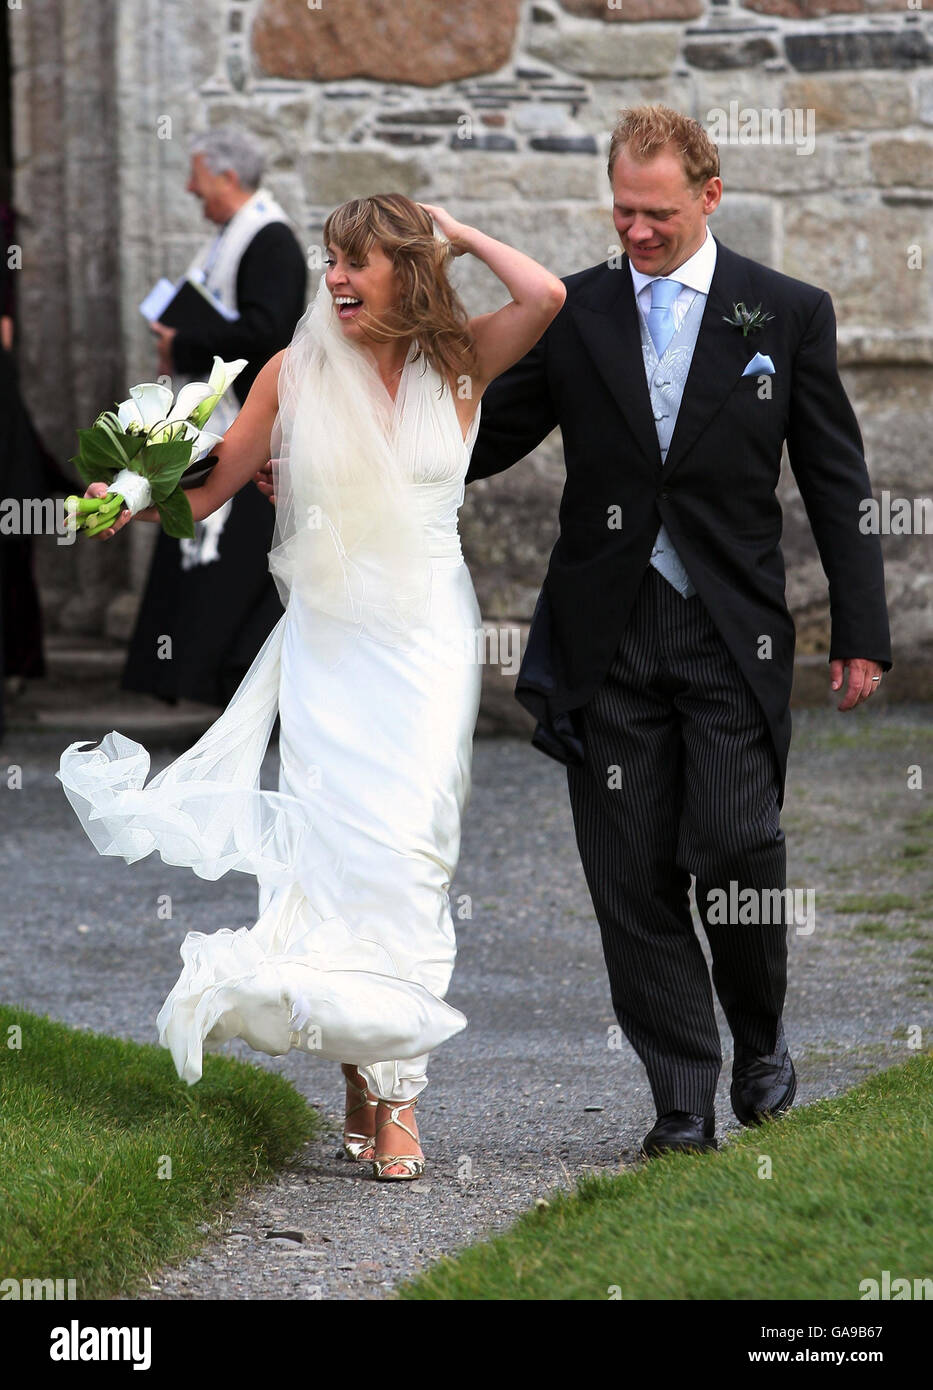 Sarah Smith, fille aînée de l'ancien chef du Parti travailliste John Smith, quitte l'abbaye d'Iona avec son mari Simon Conway après leur mariage aujourd'hui. Banque D'Images